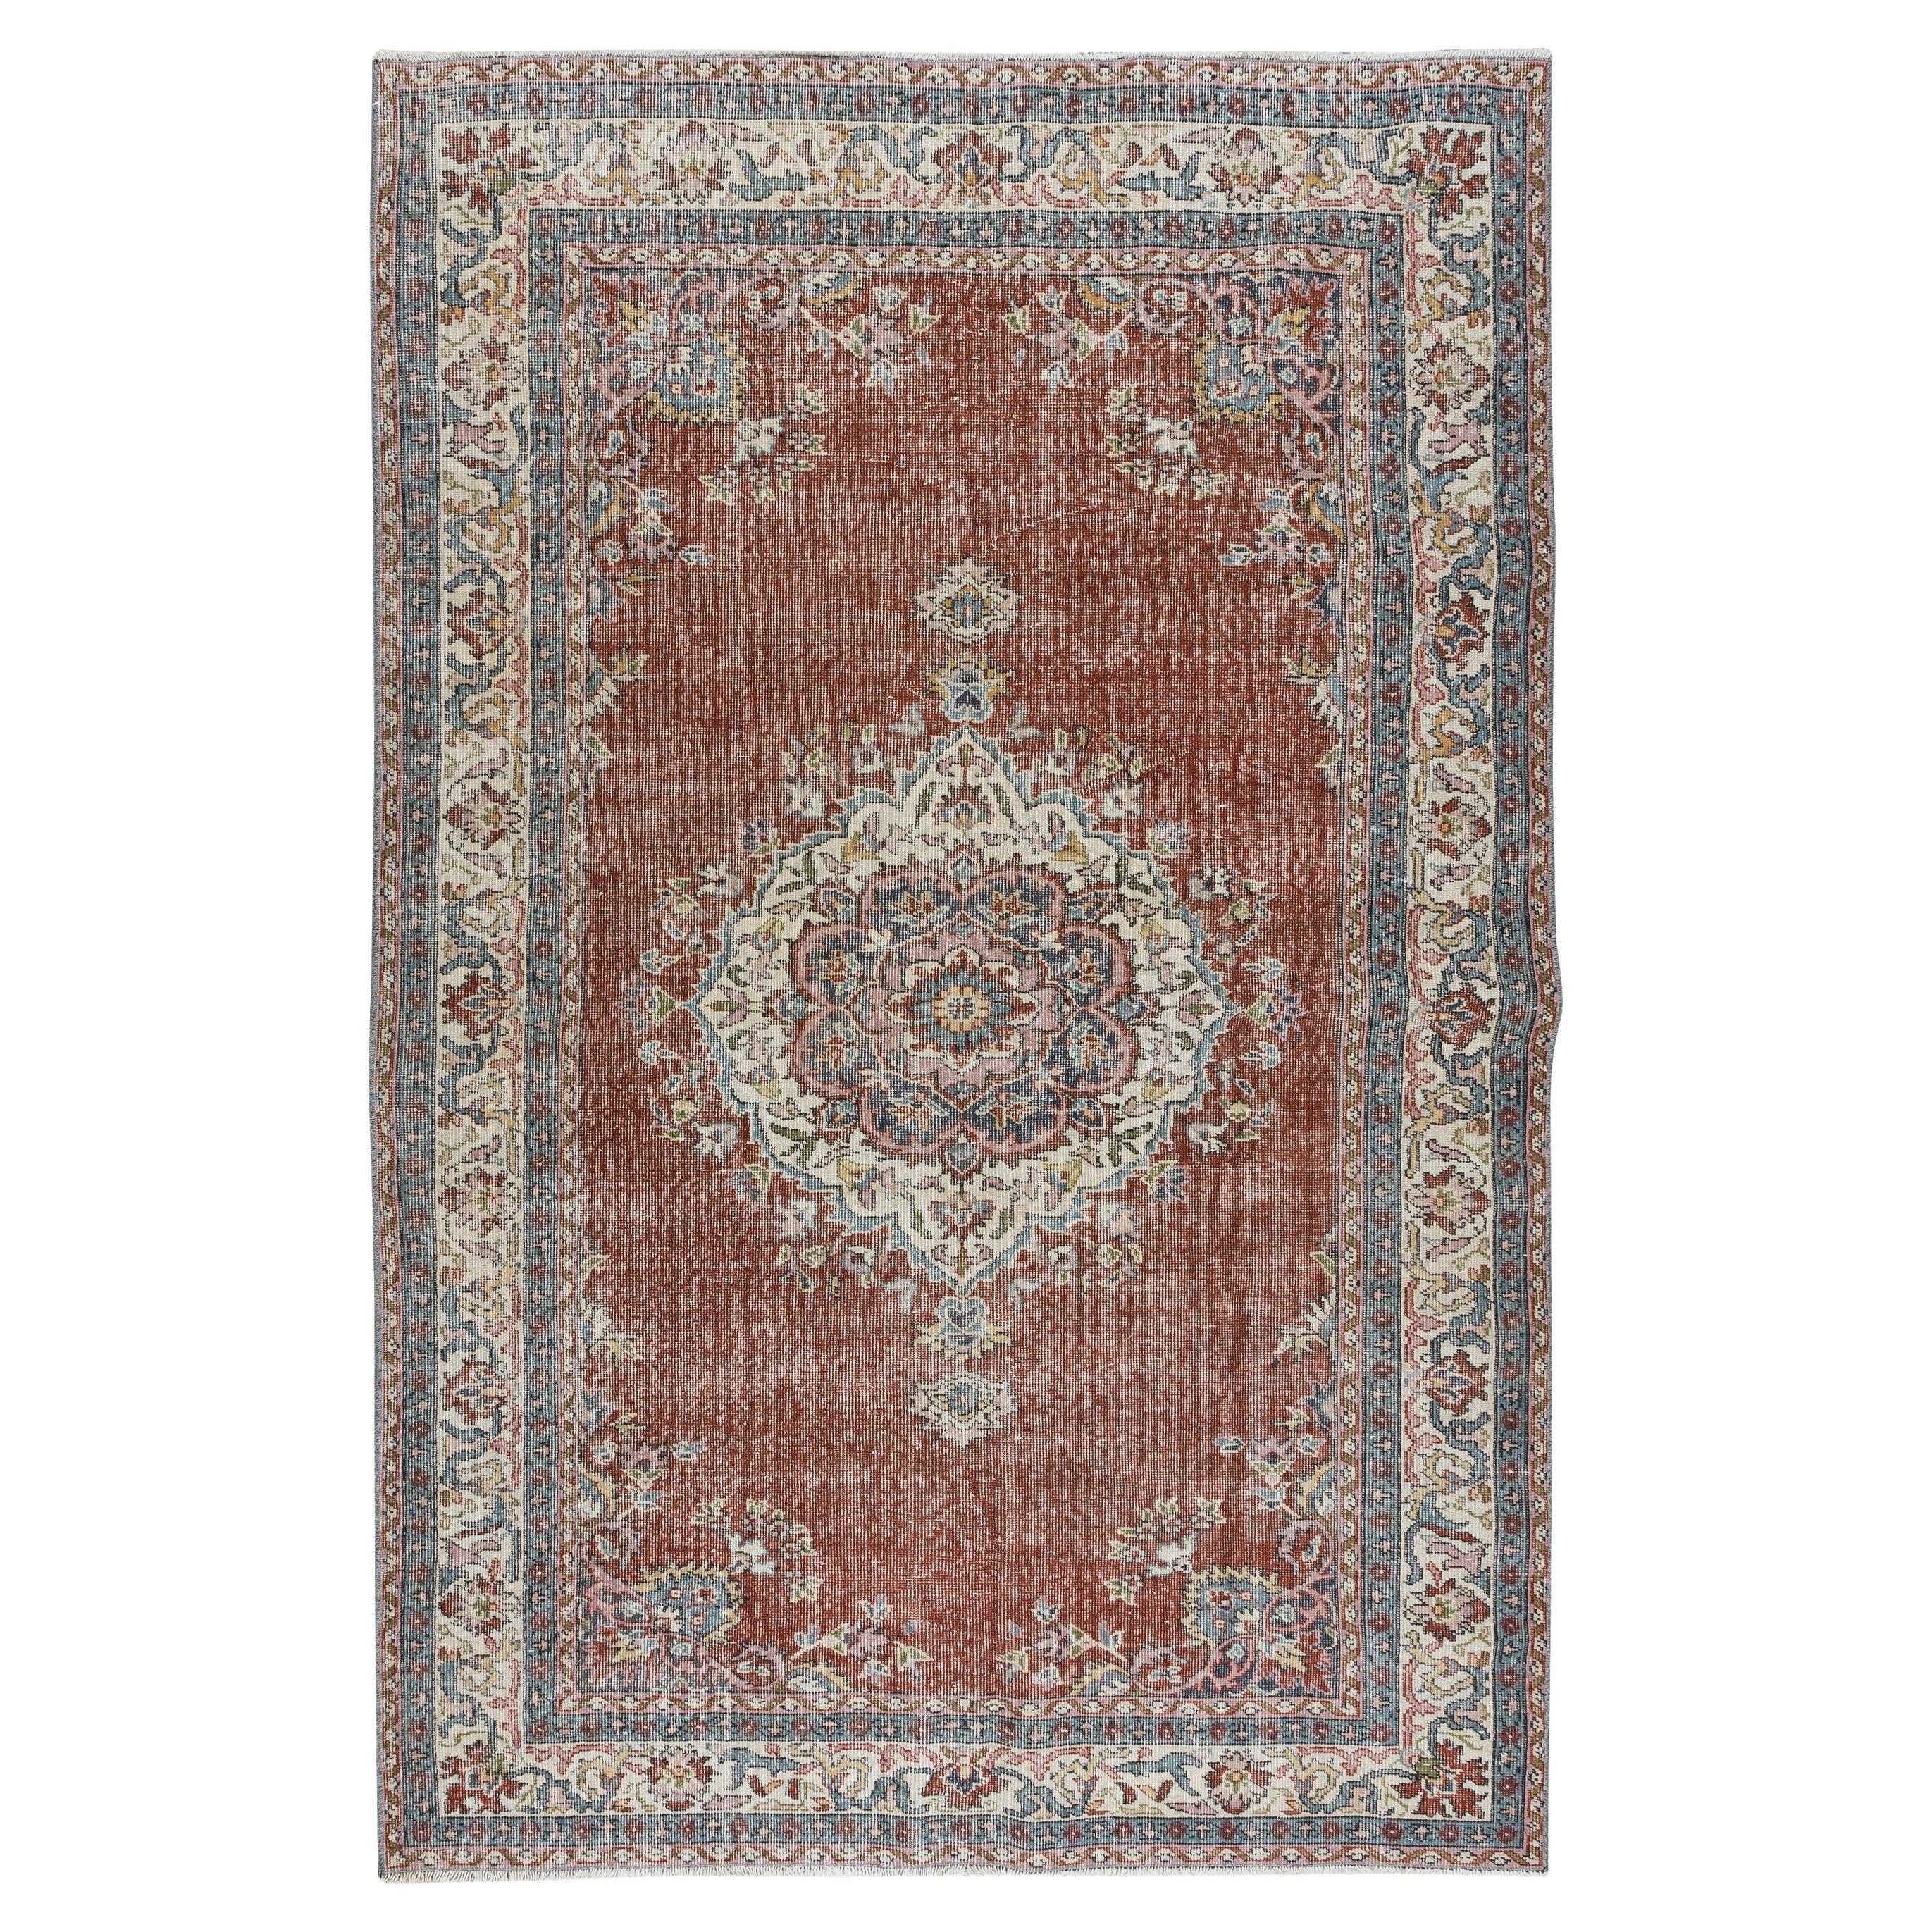 Traditioneller handgeknüpfter türkischer Vintage-Teppich mit Medaillon-Design, 5,4x8,5 Fuß